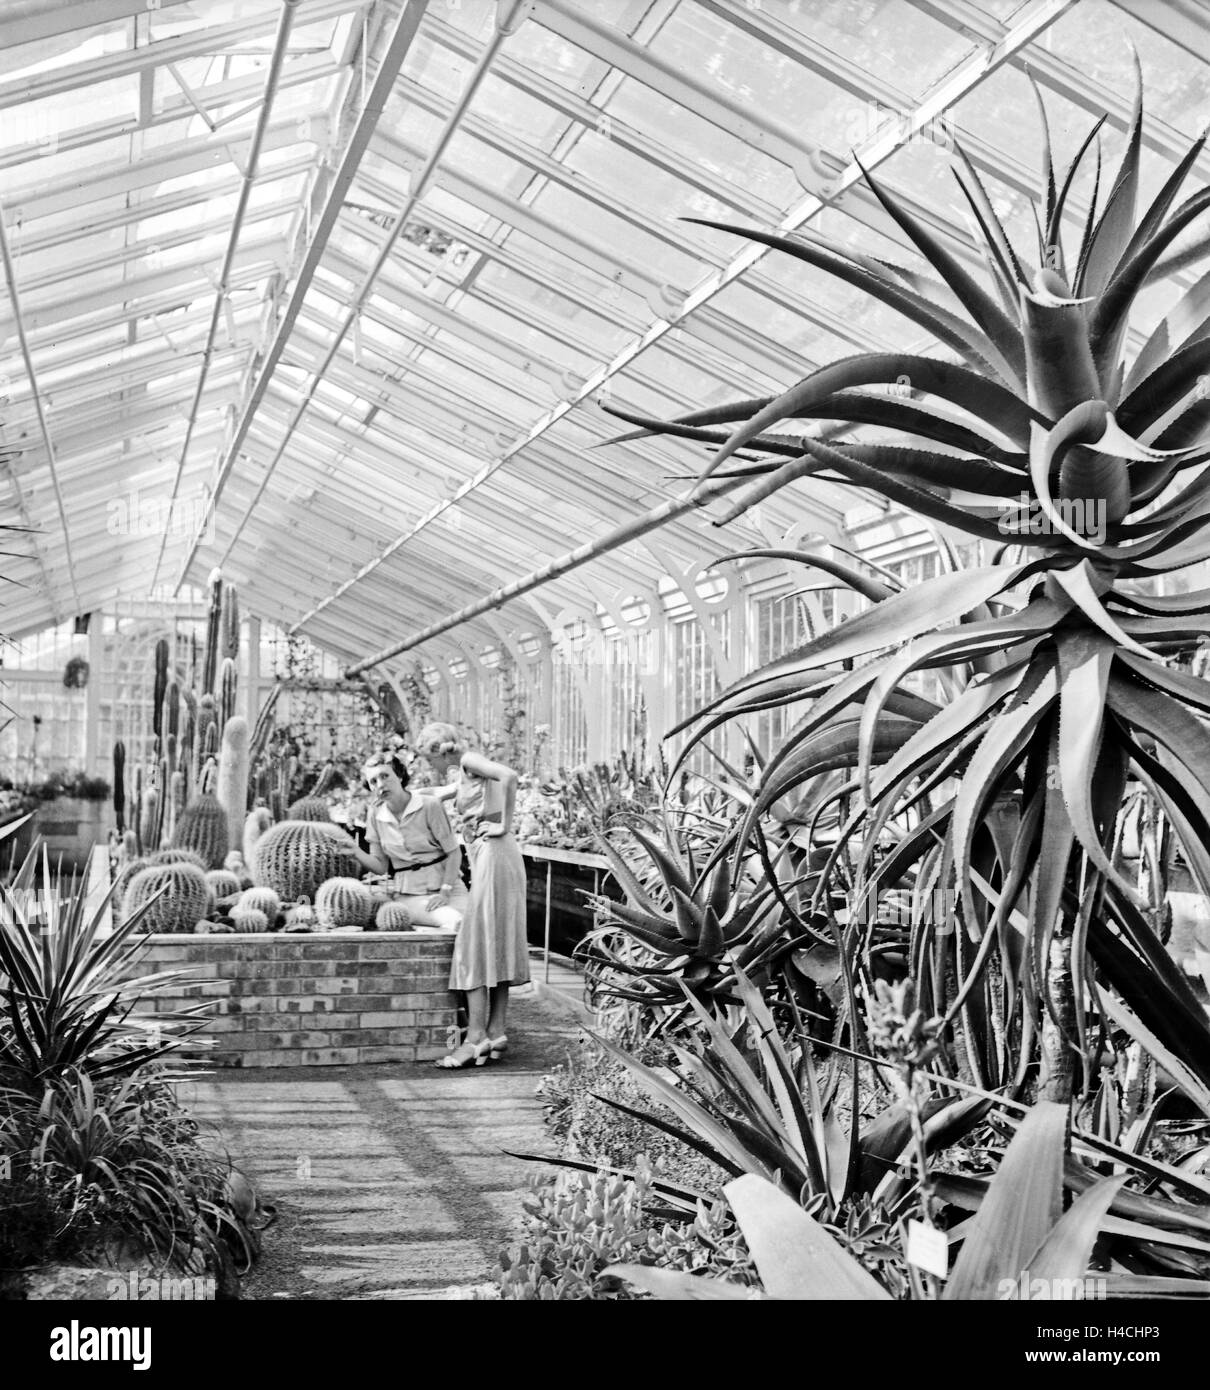 Zwei Frauen in einem Gewächshaus mit tropischen Pflanzen und Kakteen in Stuttgart, Deutschland 1930er Jahre. Two women at a greenhouse watching tropical plants and cactuses at Stuttgart, Germany 1930s. Stock Photo